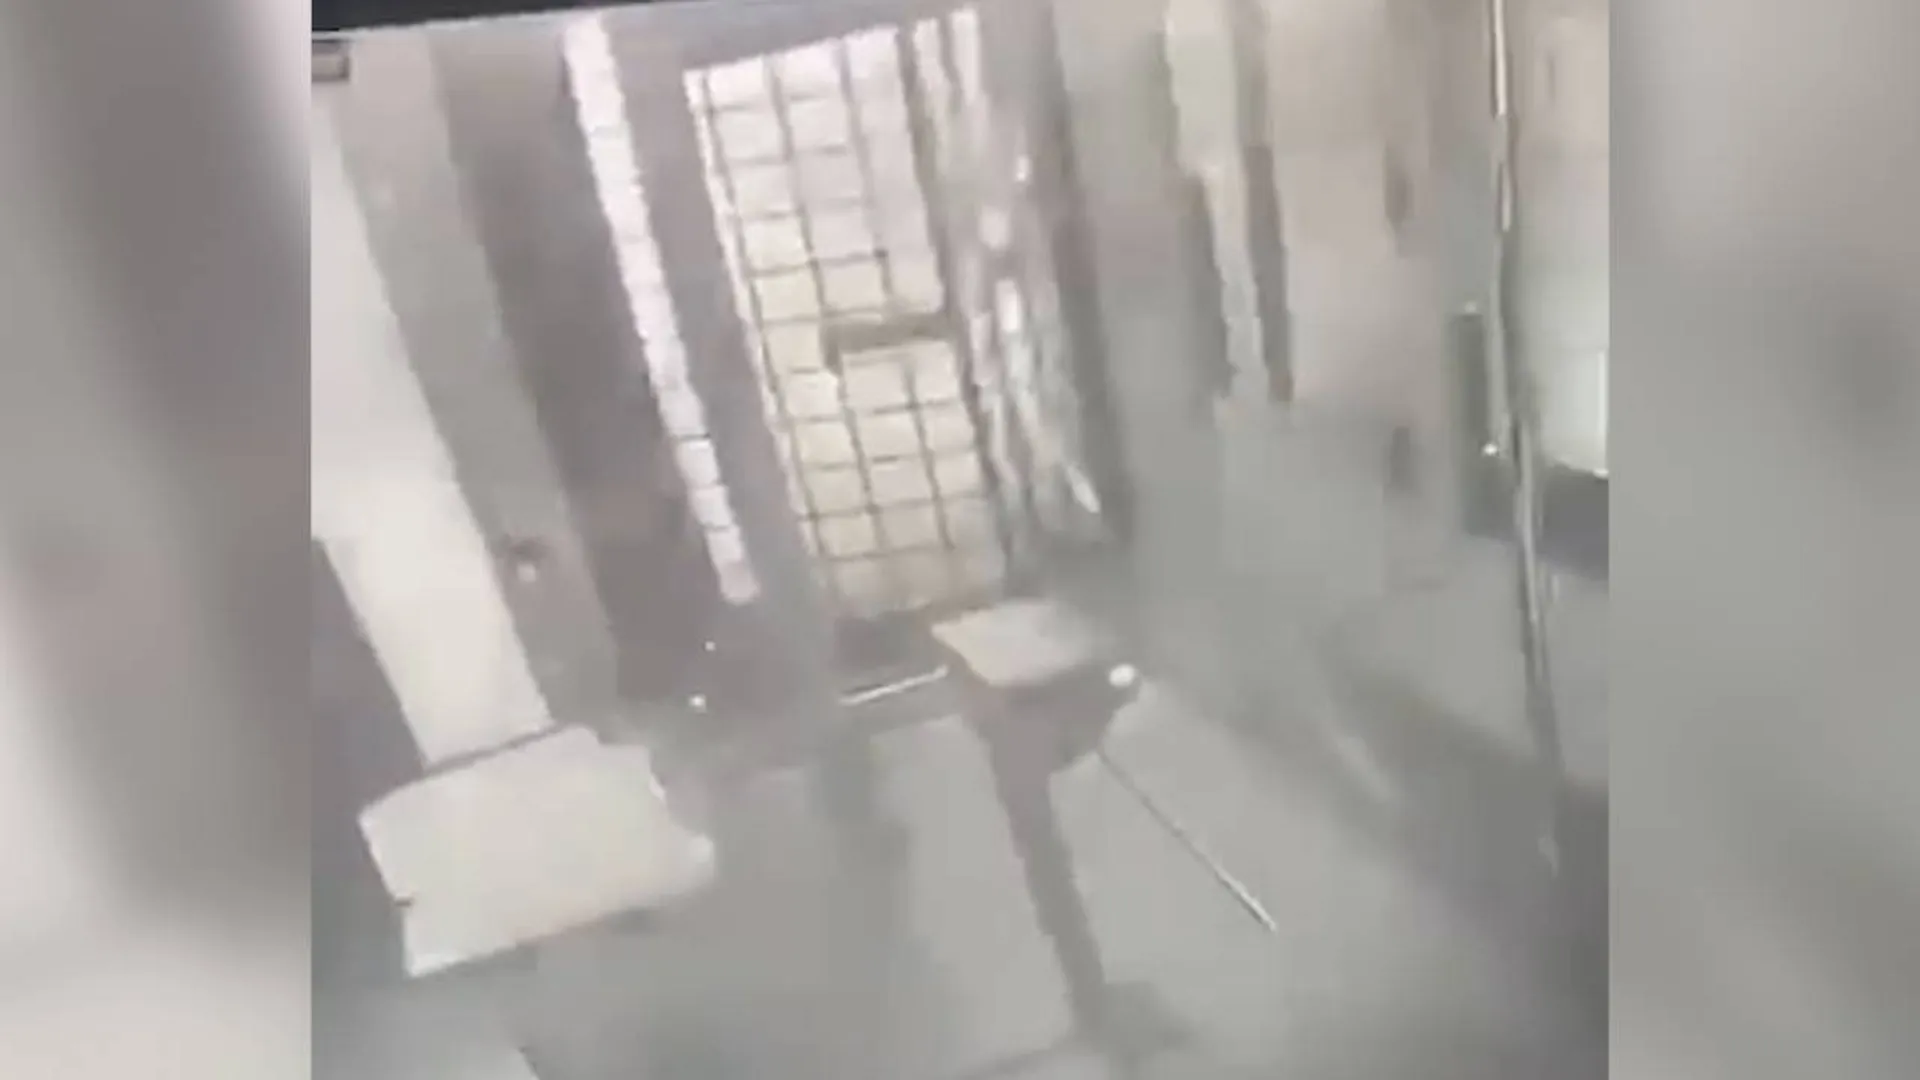 Появилось видео взрыва, снятое внутри отделения полиции в Лисках